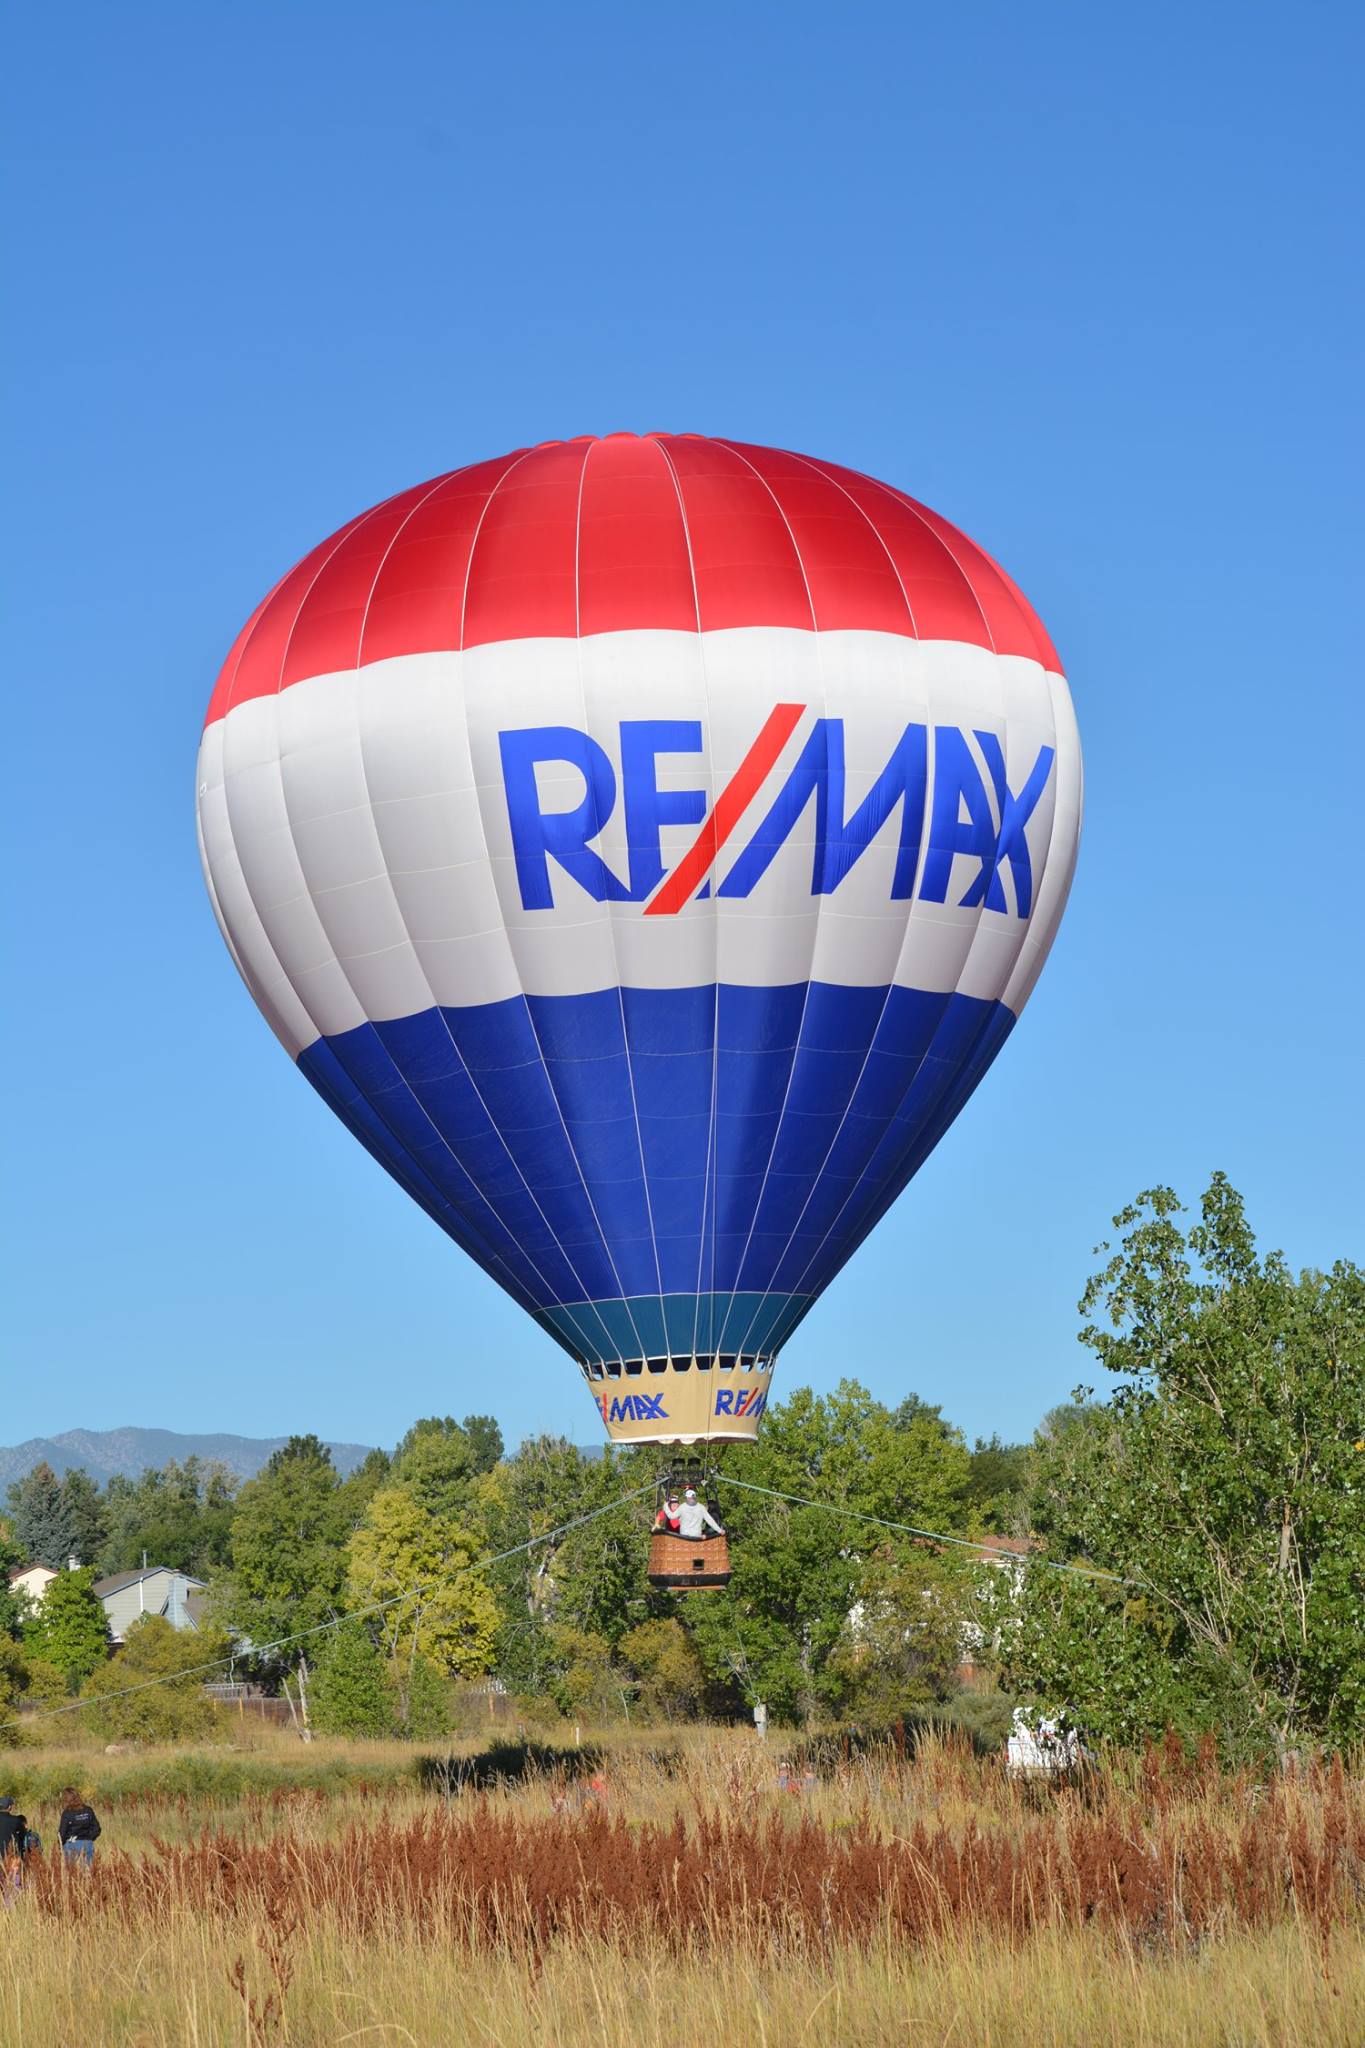 Re/Max Balloon in Air